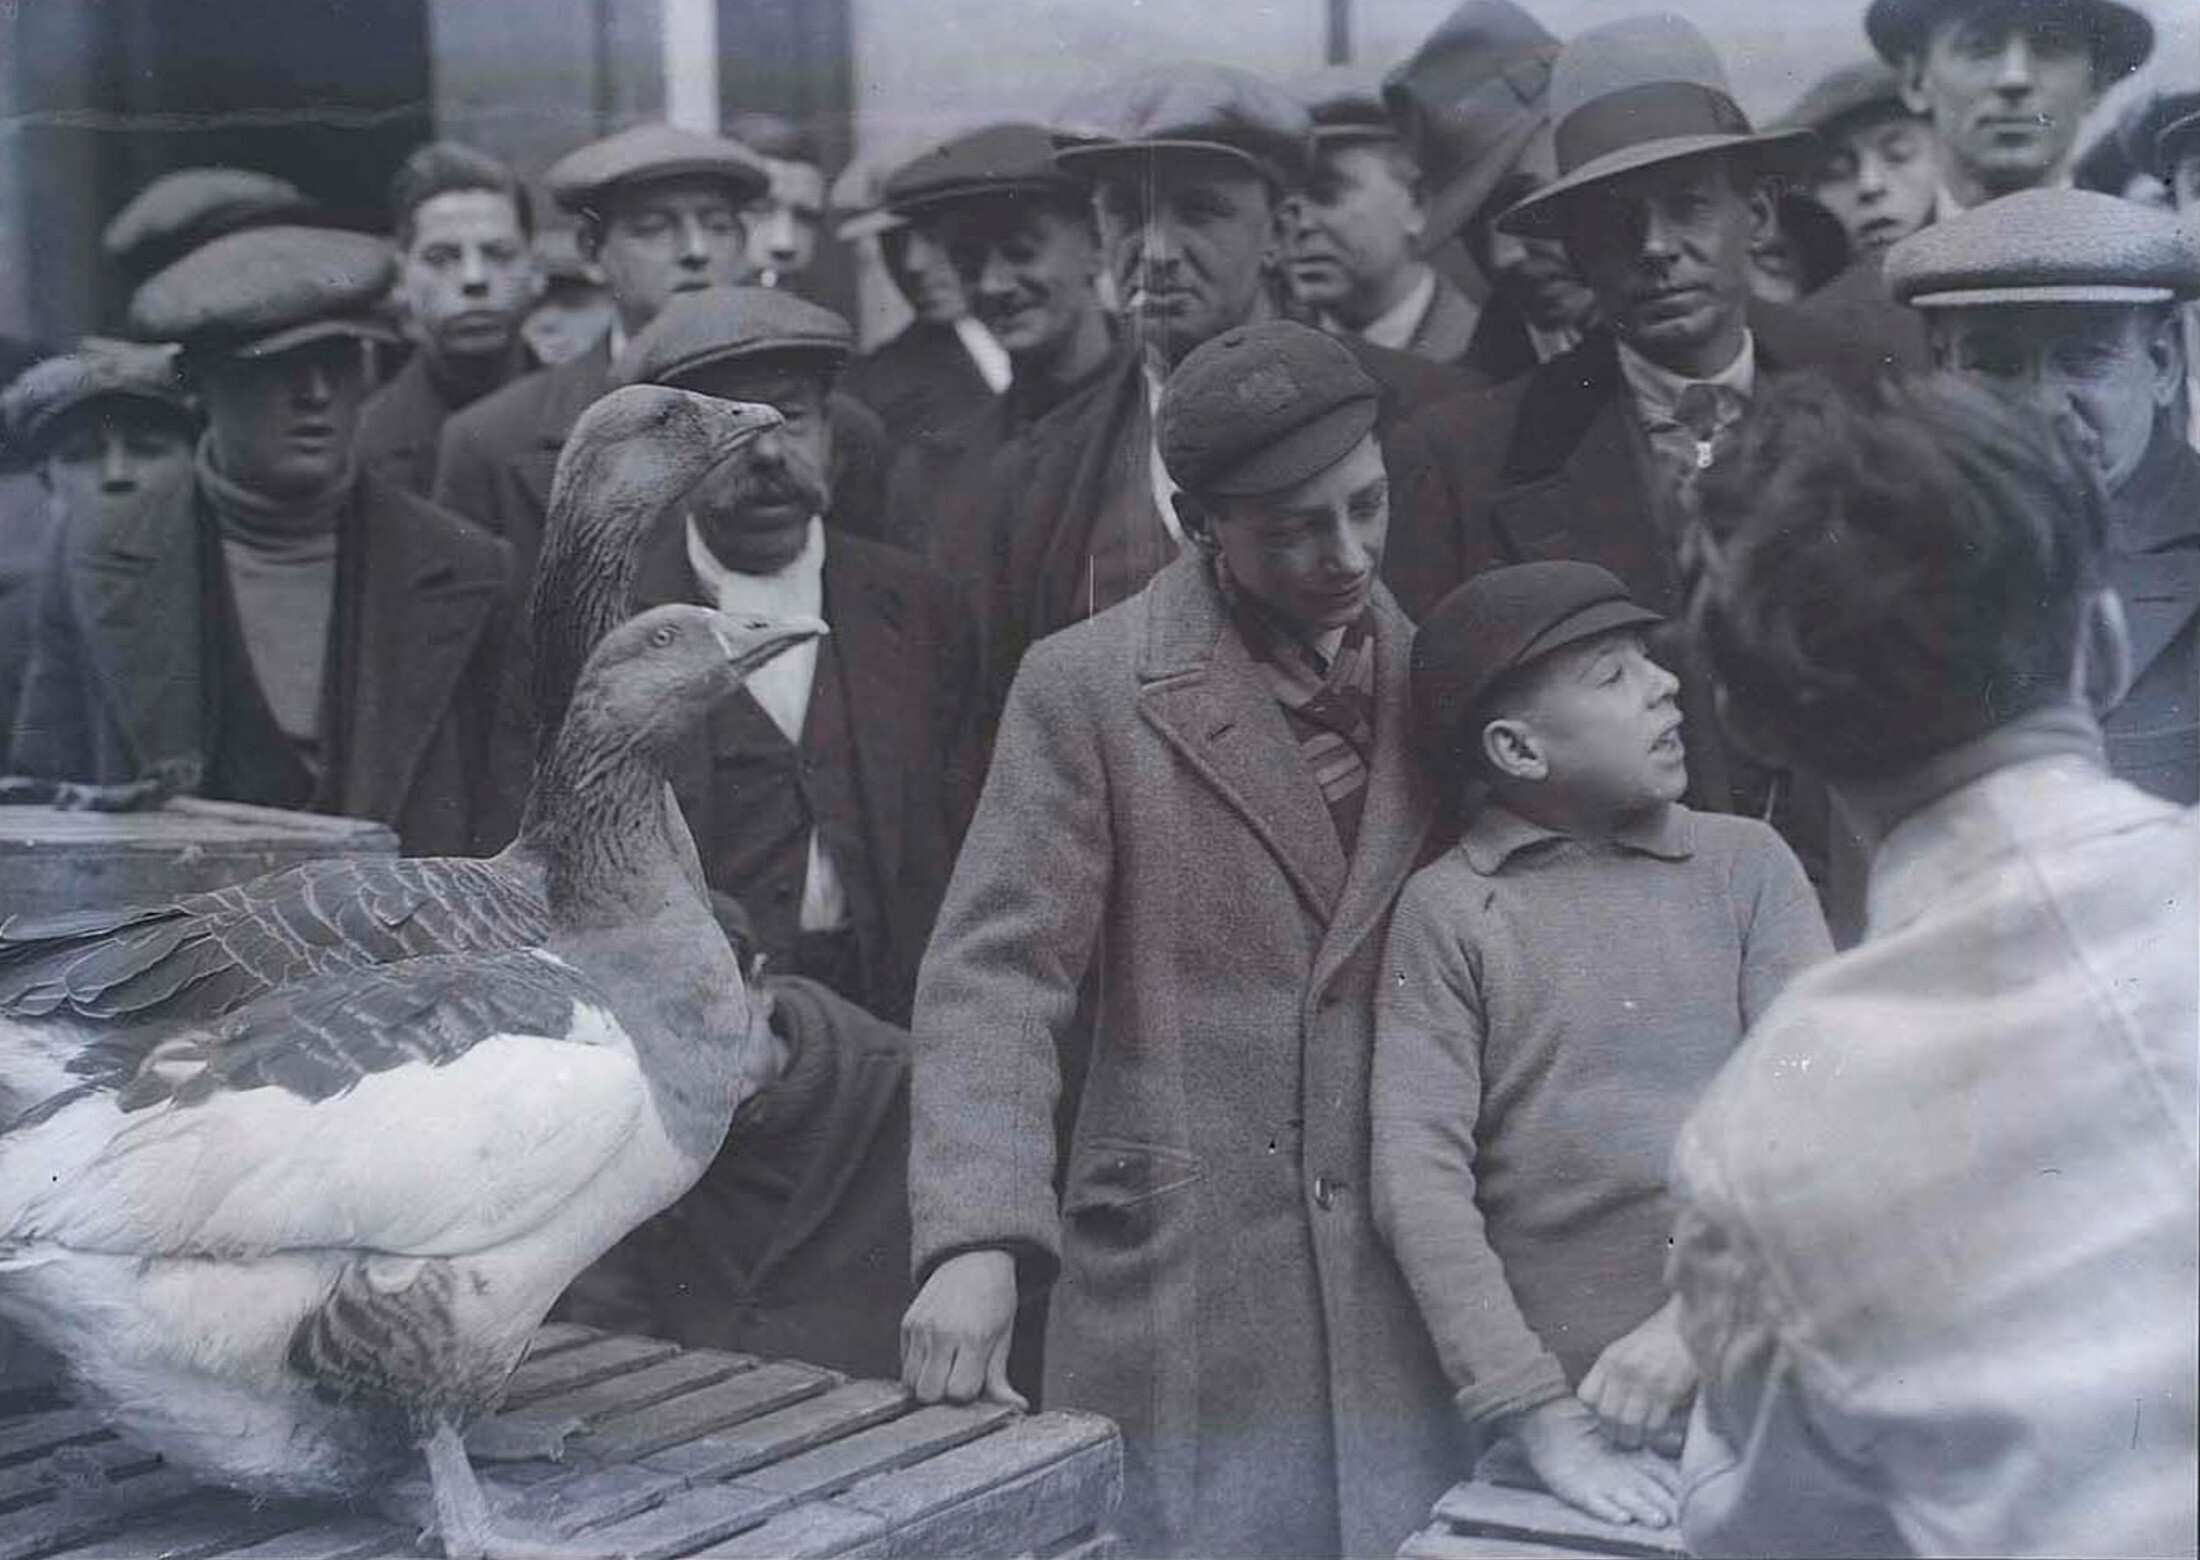 Гуси на рынке, Англия, 1932. Фотограф Мартин Мункачи